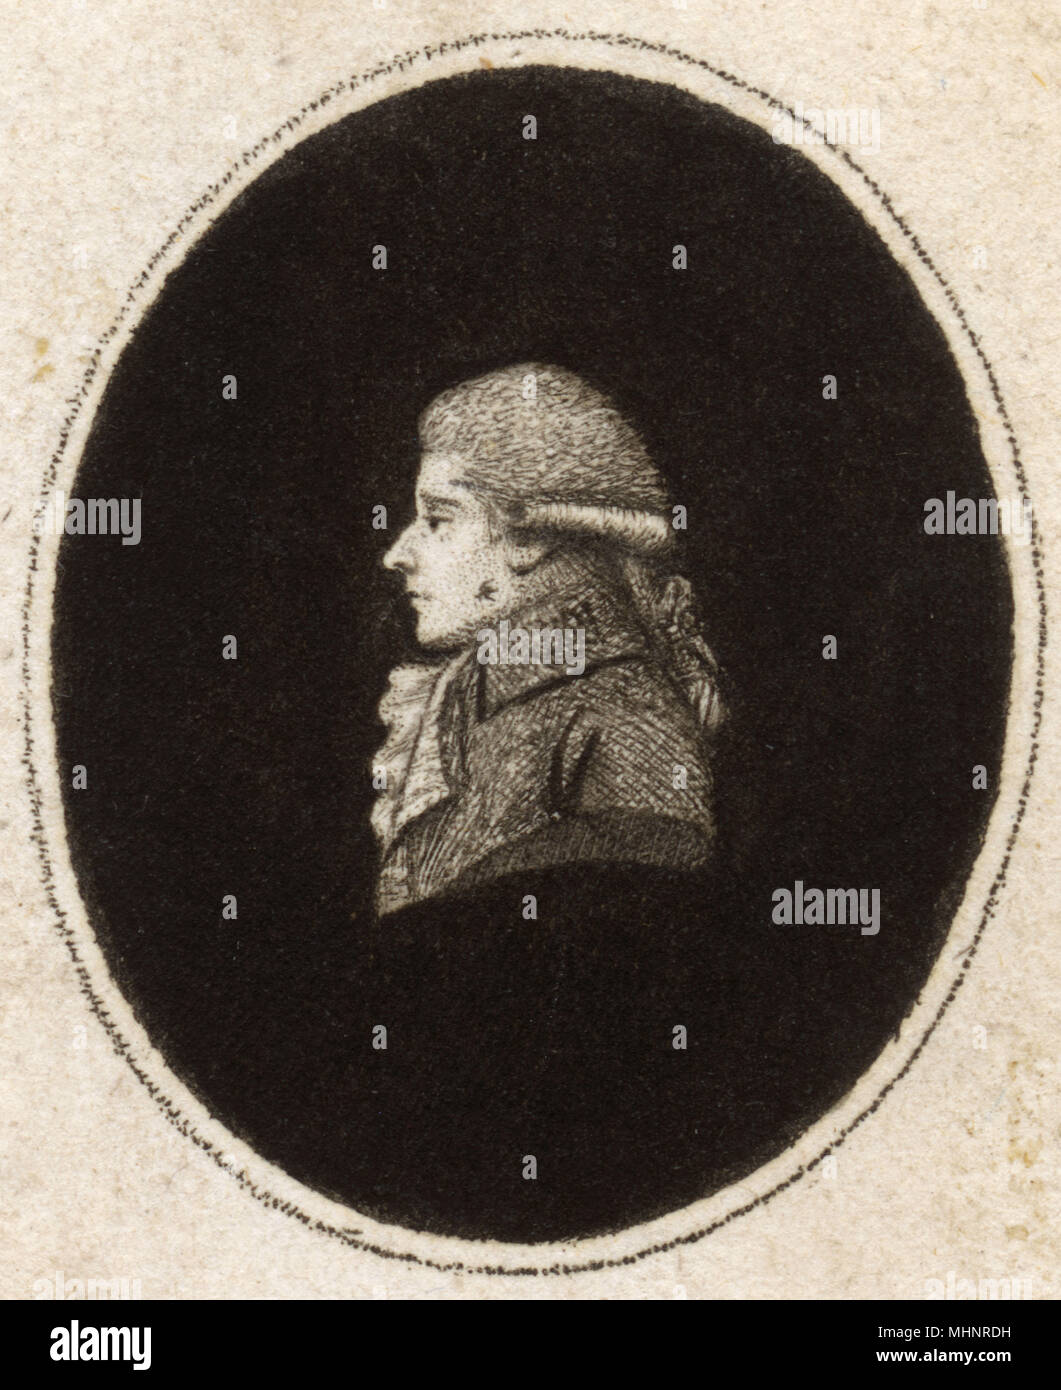 Kay realizado por él. Autorretrato por John Kay de Edimburgo (grabado en miniatura) Fecha: 1787 Foto de stock